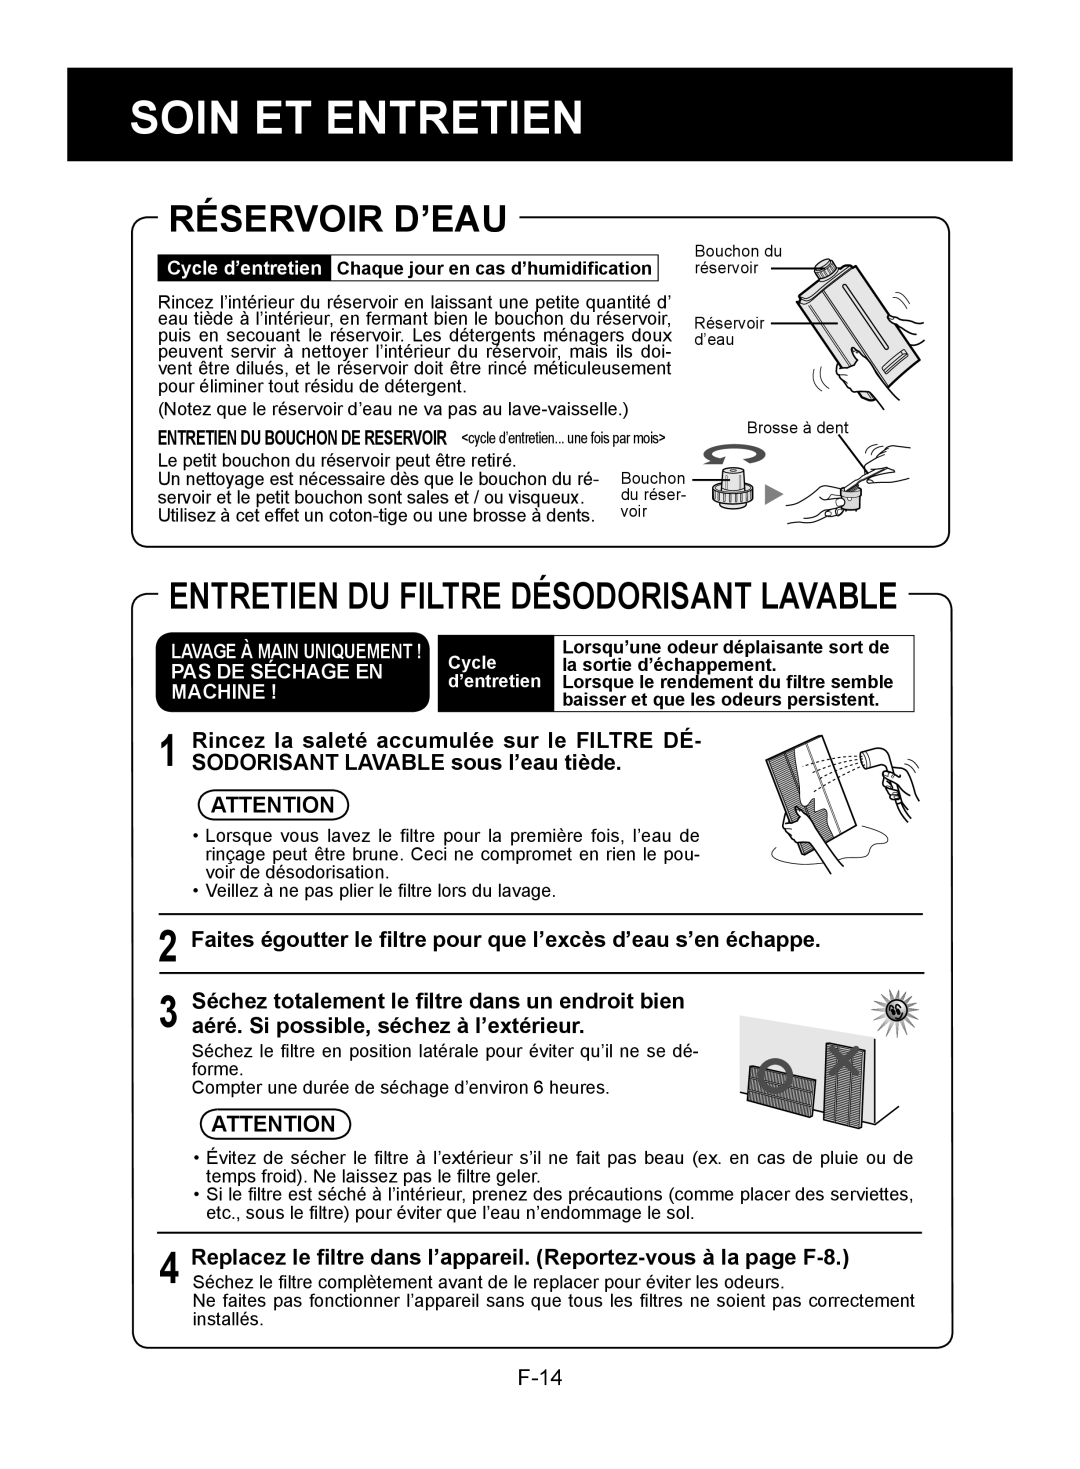 Sharp KC-850U operation manual Réservoir D’Eau, Soin Et Entretien, Entretien Du Filtre Désodorisant Lavable 